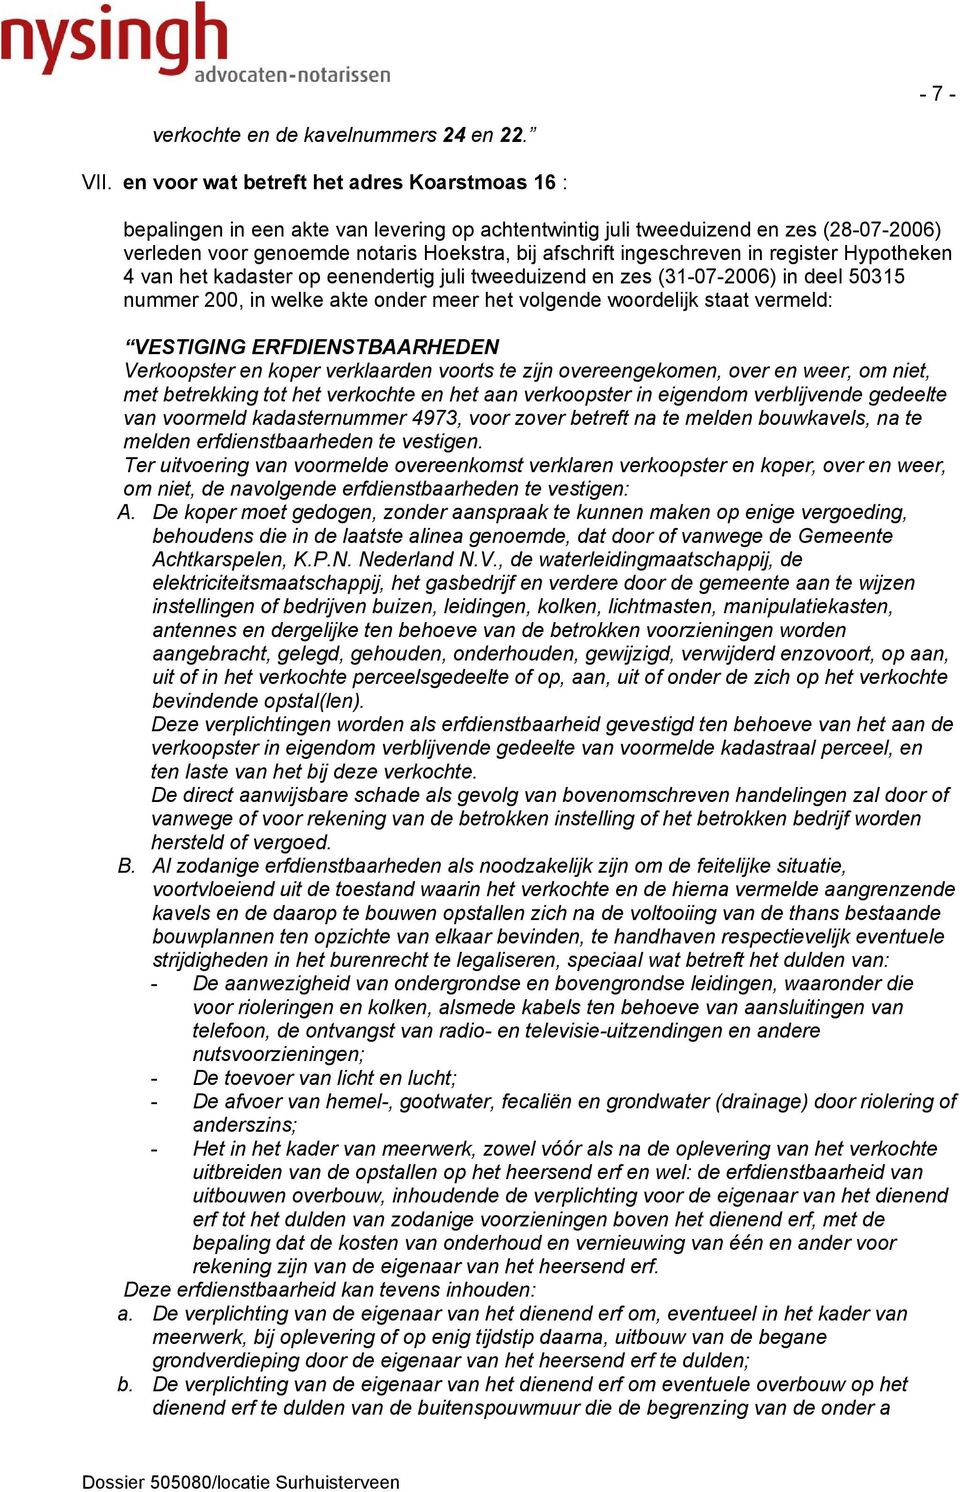 (28-07-2006) verleden voor genoemde notaris Hoekstra, bij afschrift ingeschreven in register Hypotheken 4 van het kadaster op